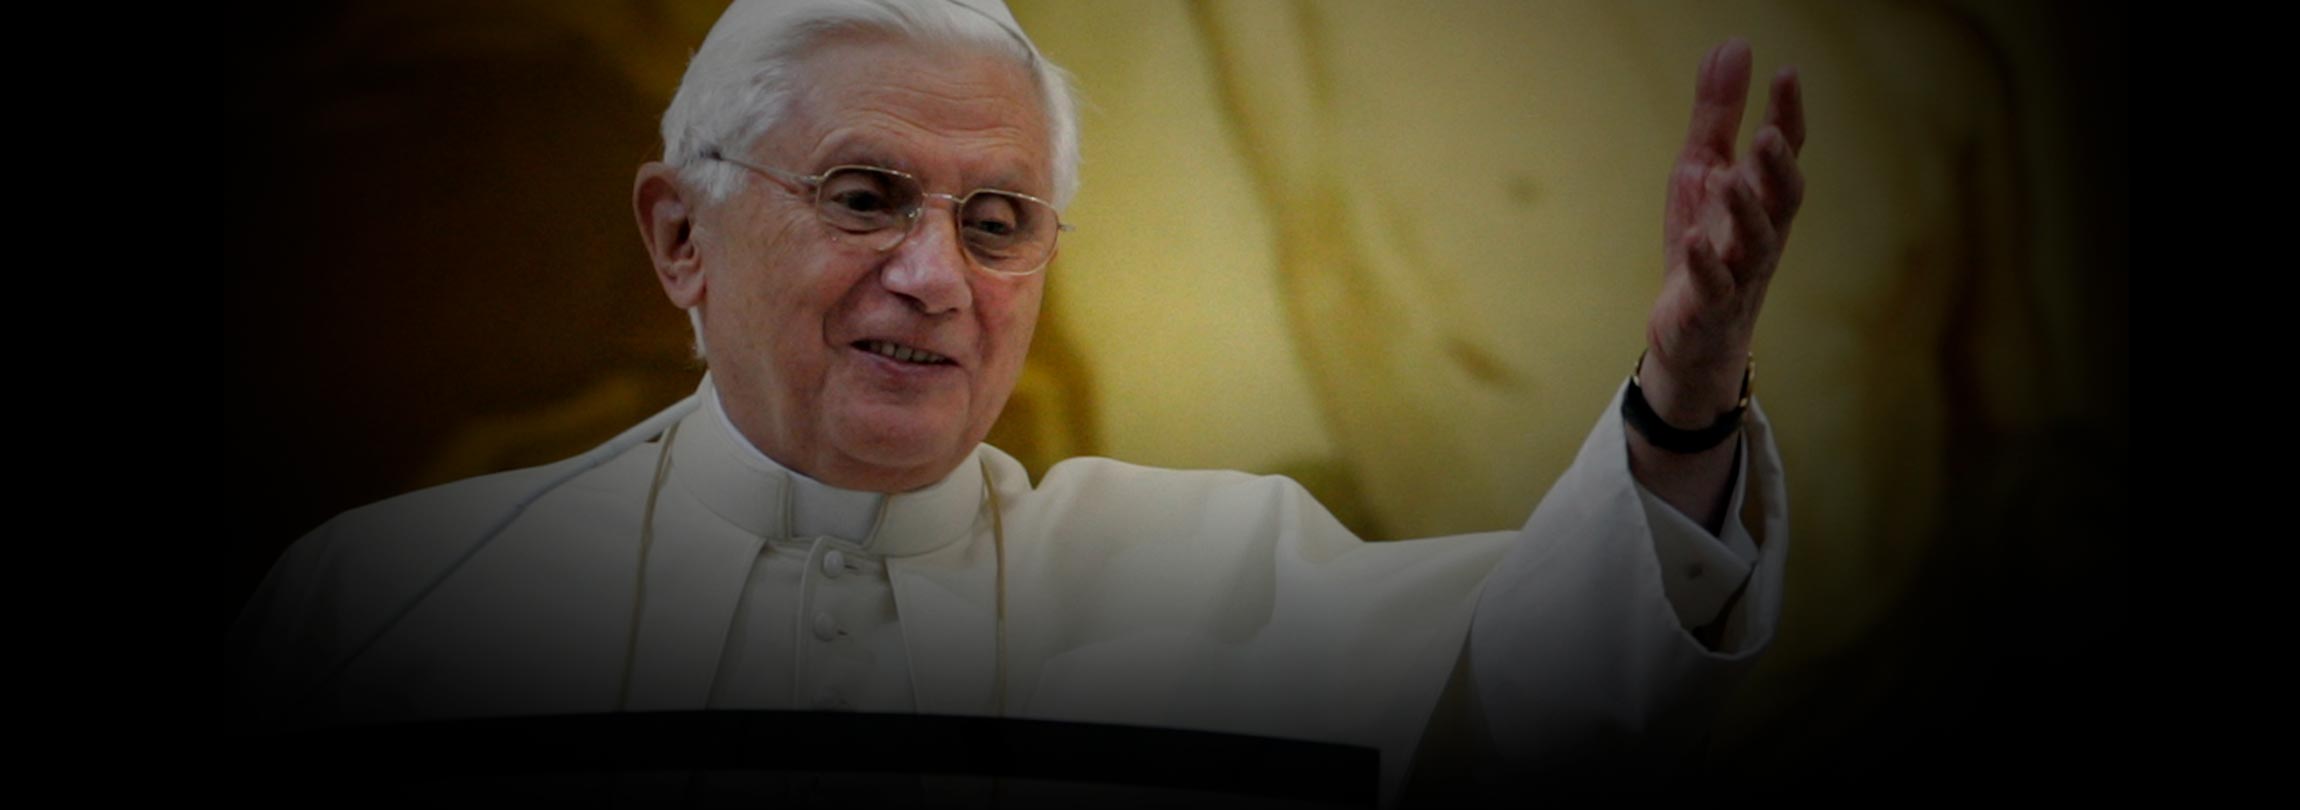 Catequese de Bento XVI sobre a Fé cristã